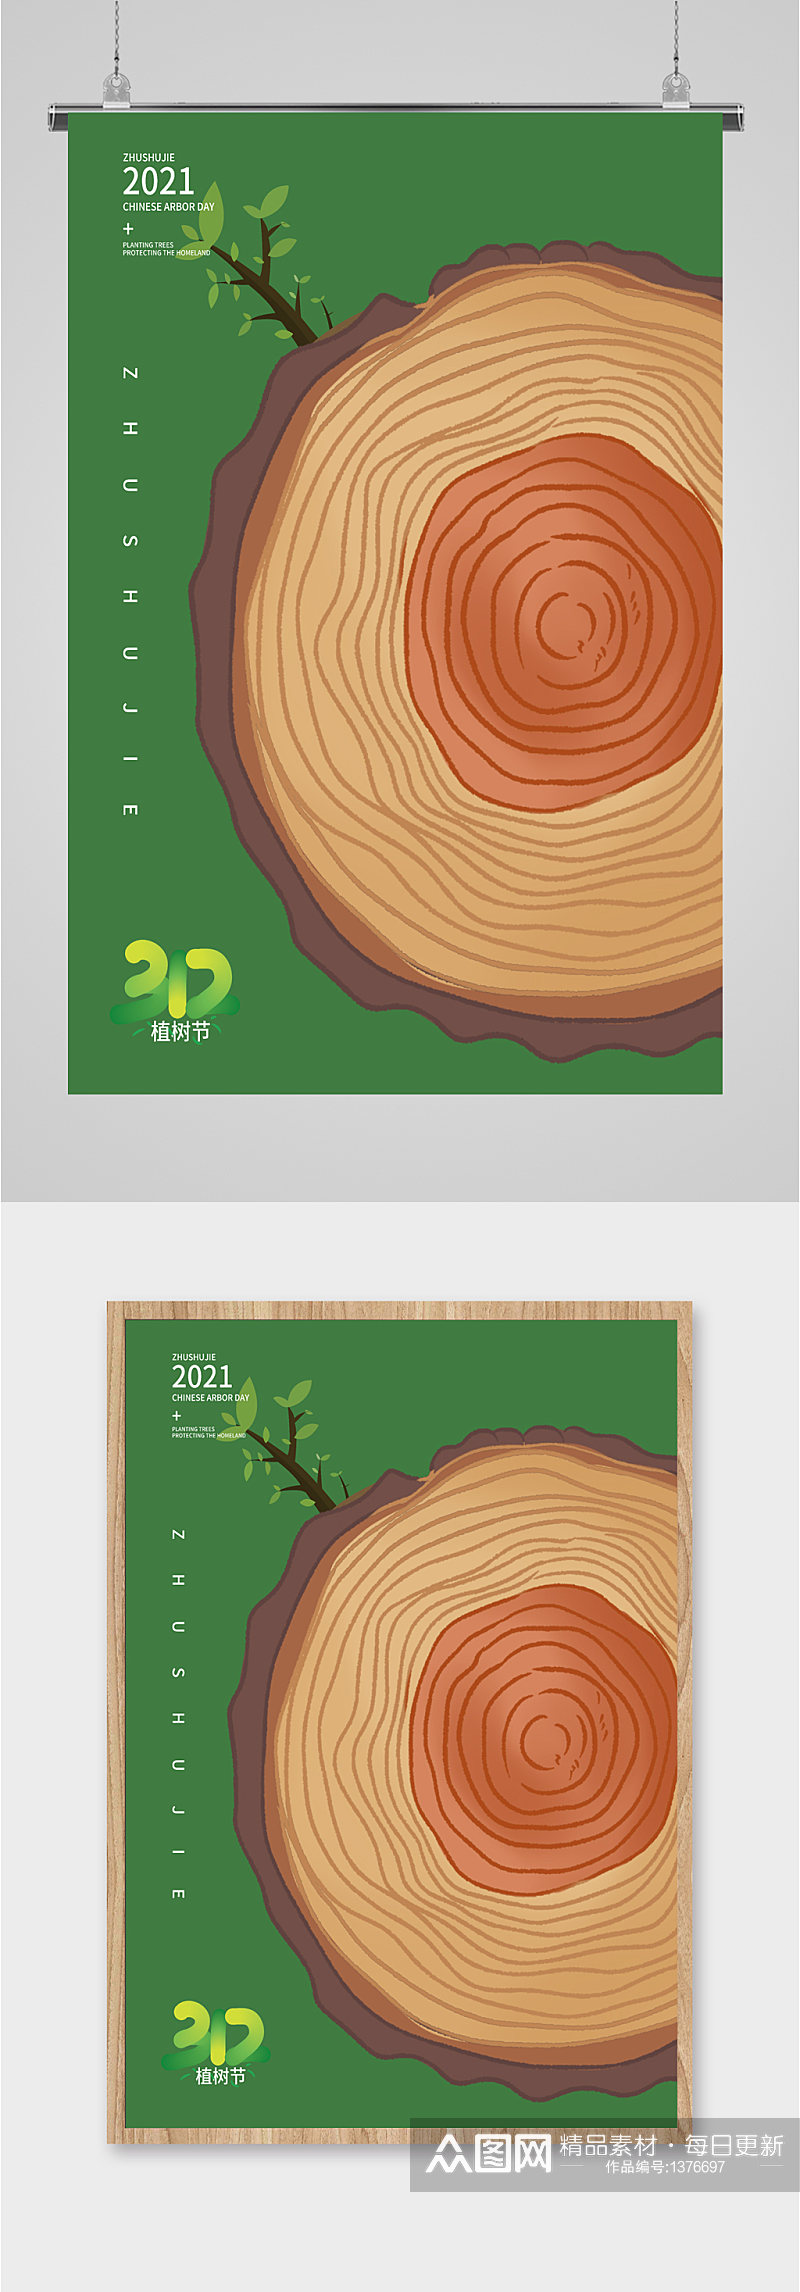 312植树节节日宣传海报素材